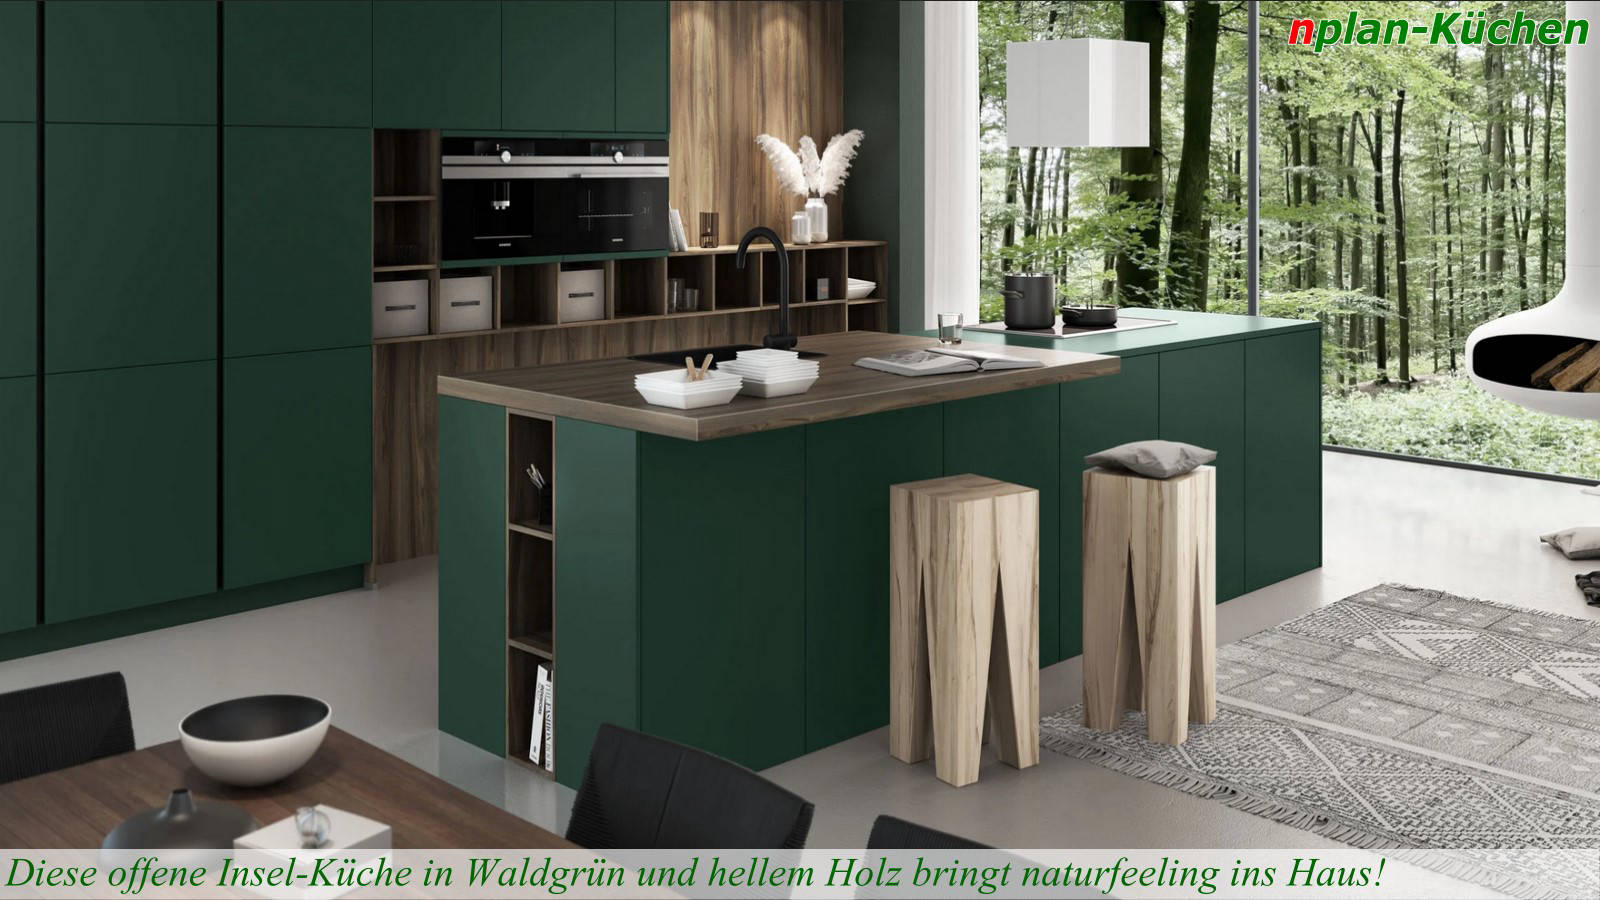 Küchenlinie Passiona - Offene Inselküche in waldgrün und hellem Holz